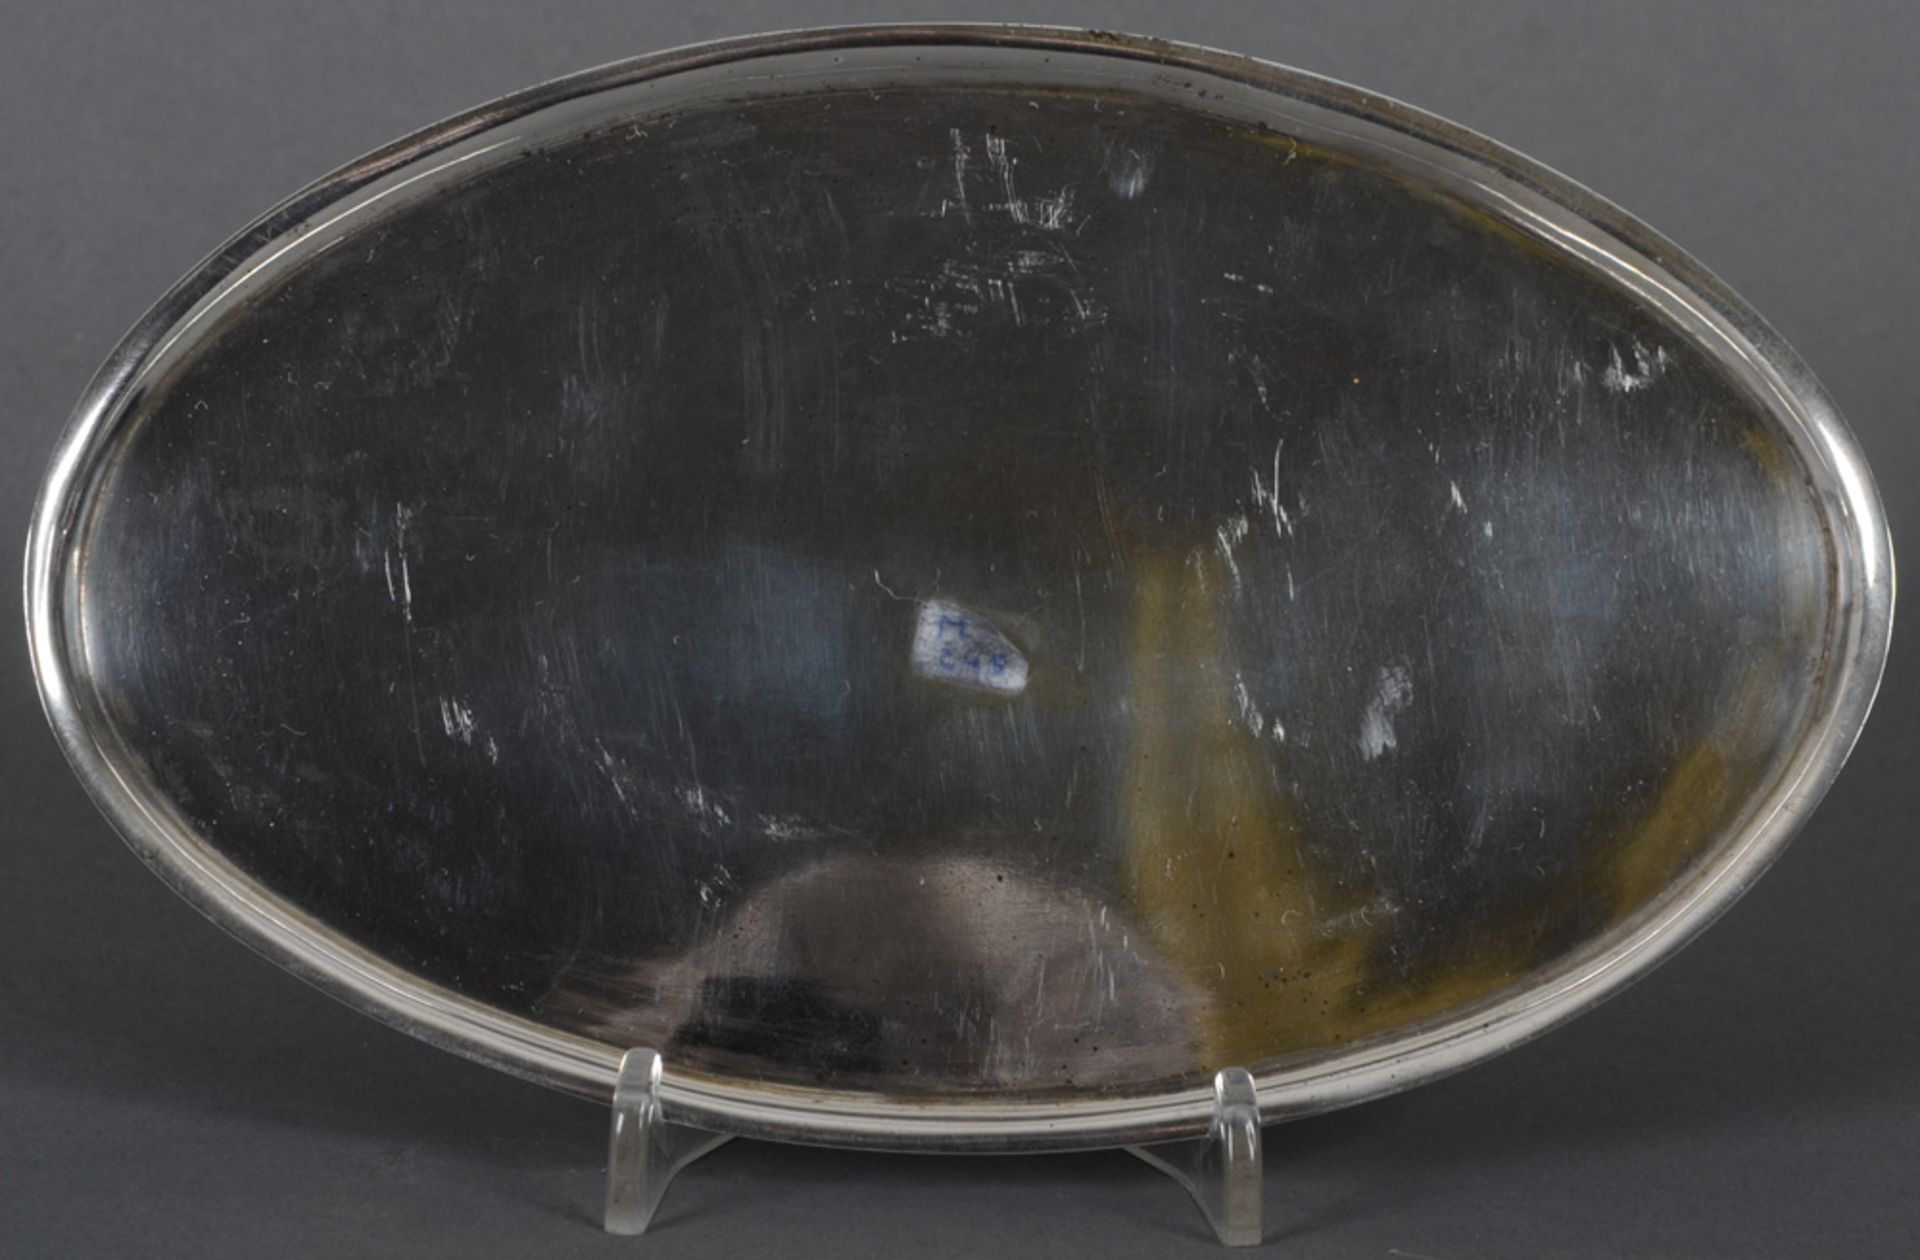 Ovales Tablett. Wien dat. 1815. Silber, ca. 130 g, mit steigendem Lippenrand; verso mit Stadtpunze